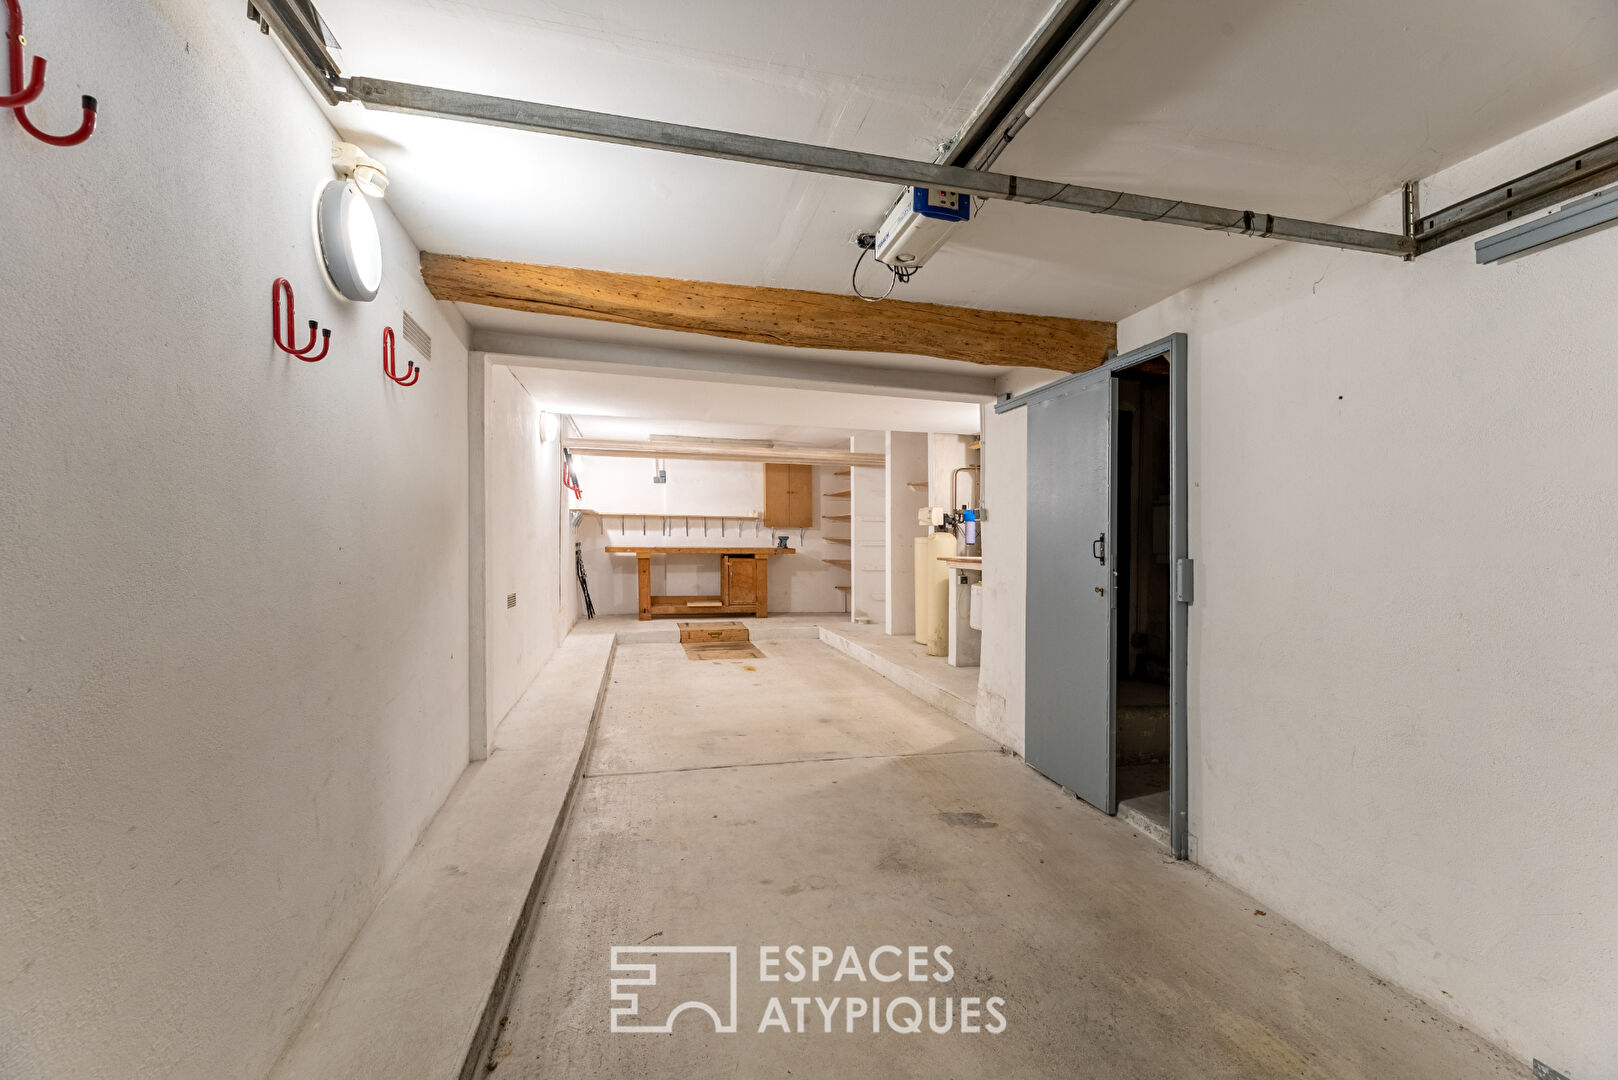 DEJA LOUEE – Maison de ville avec garage au coeur historique de Rouen